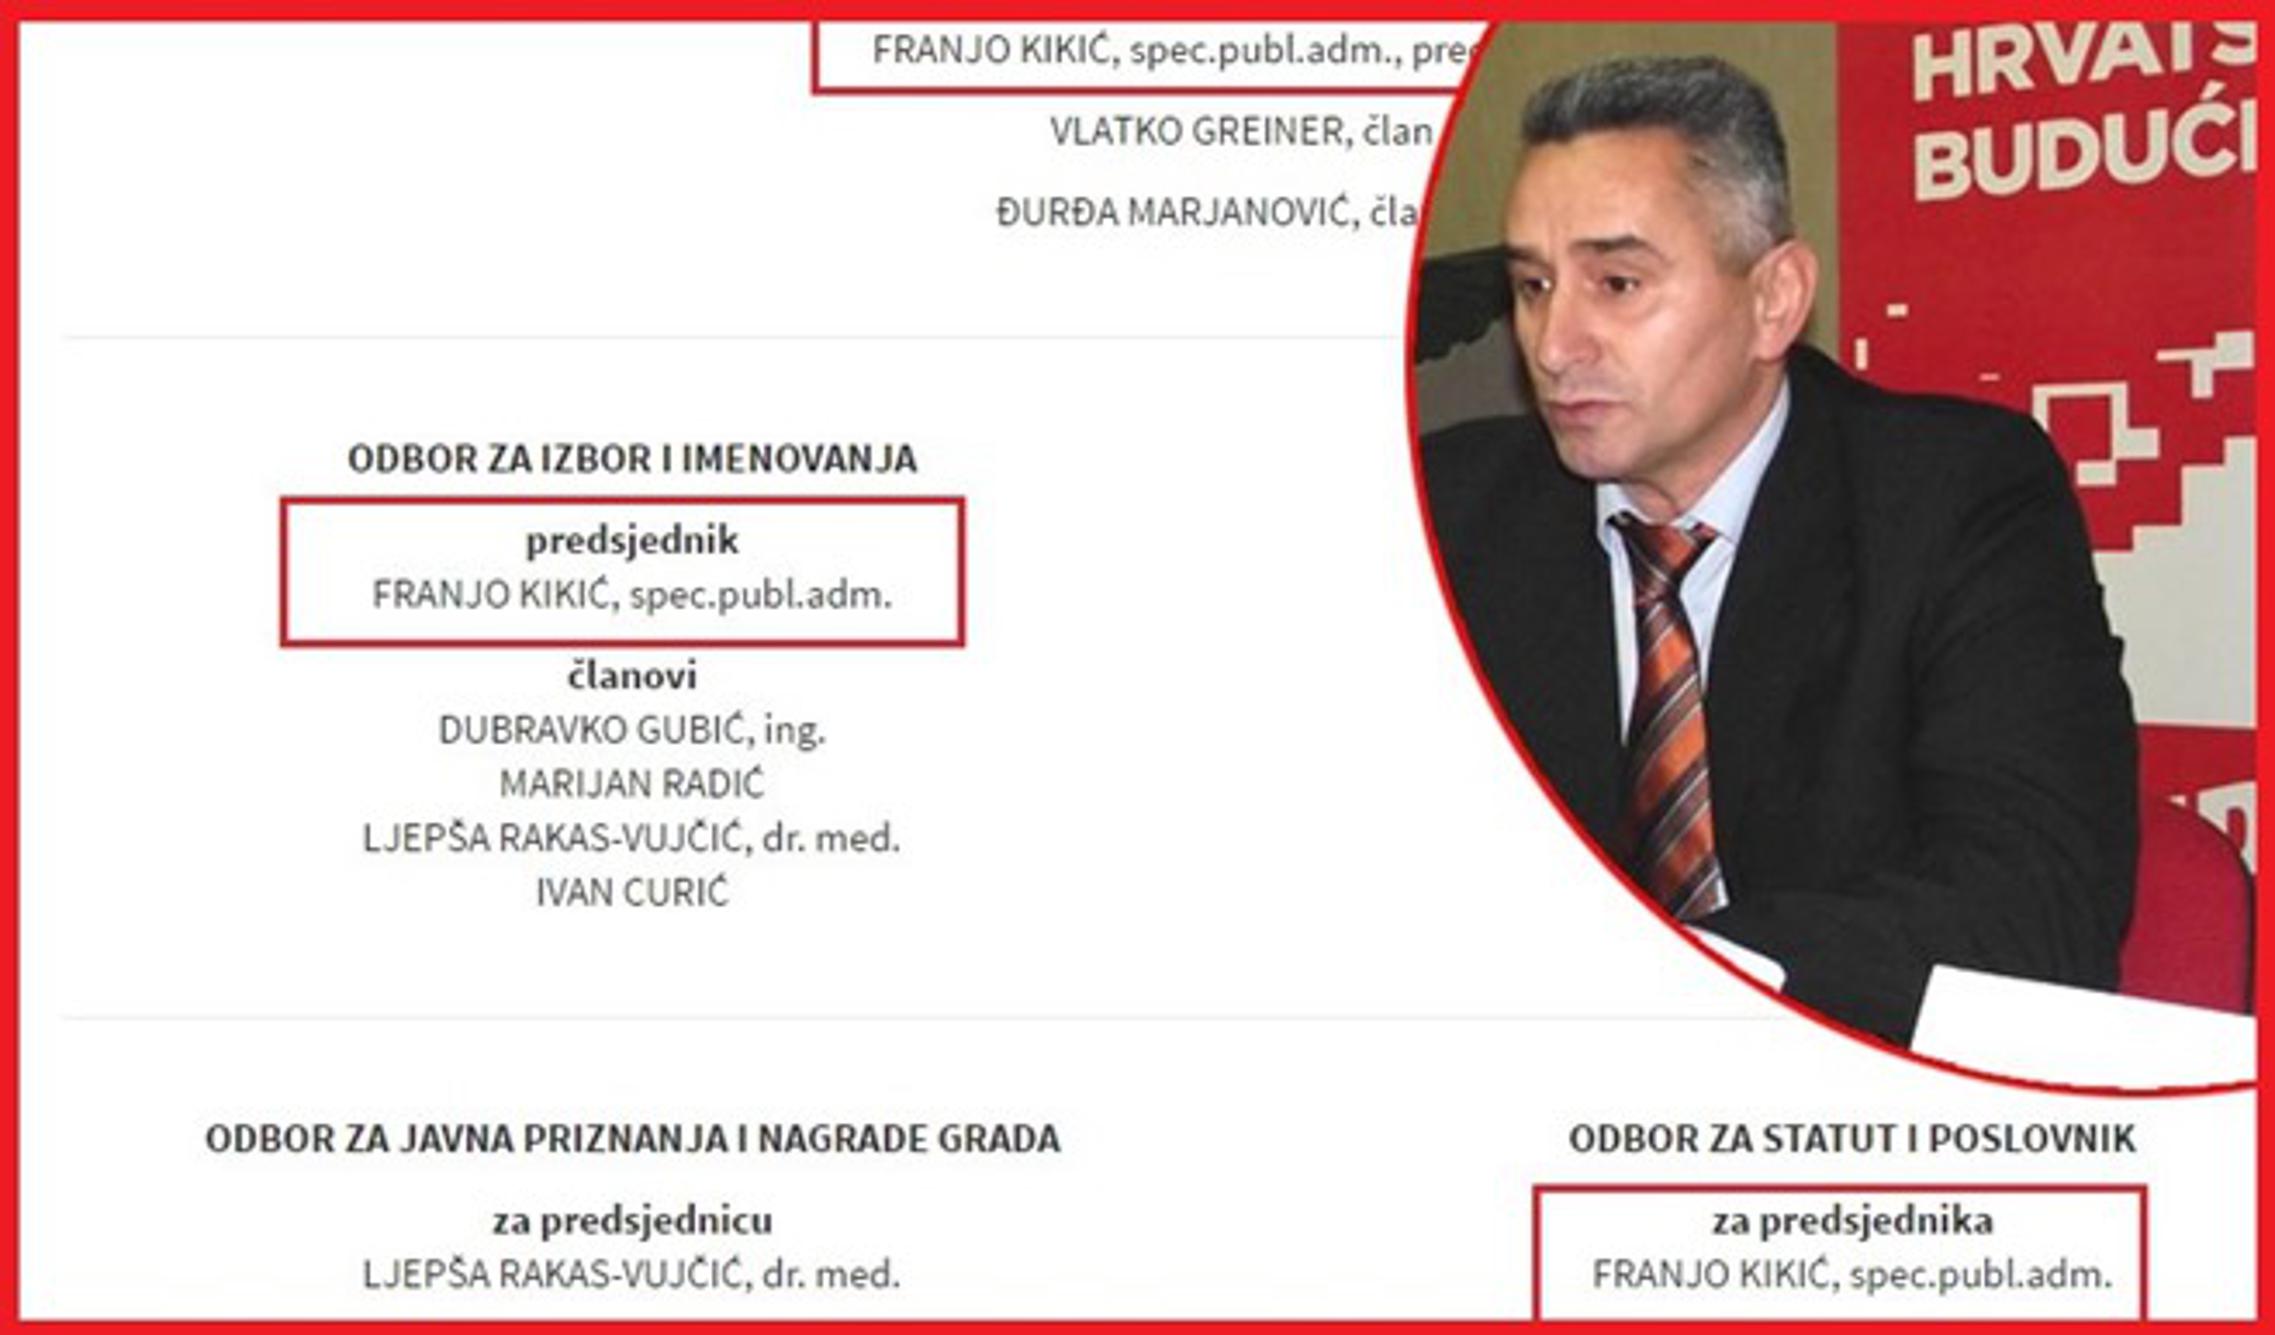 Franjo Kikić i sve njegove funkcije - u tijelima gradskog vijeća